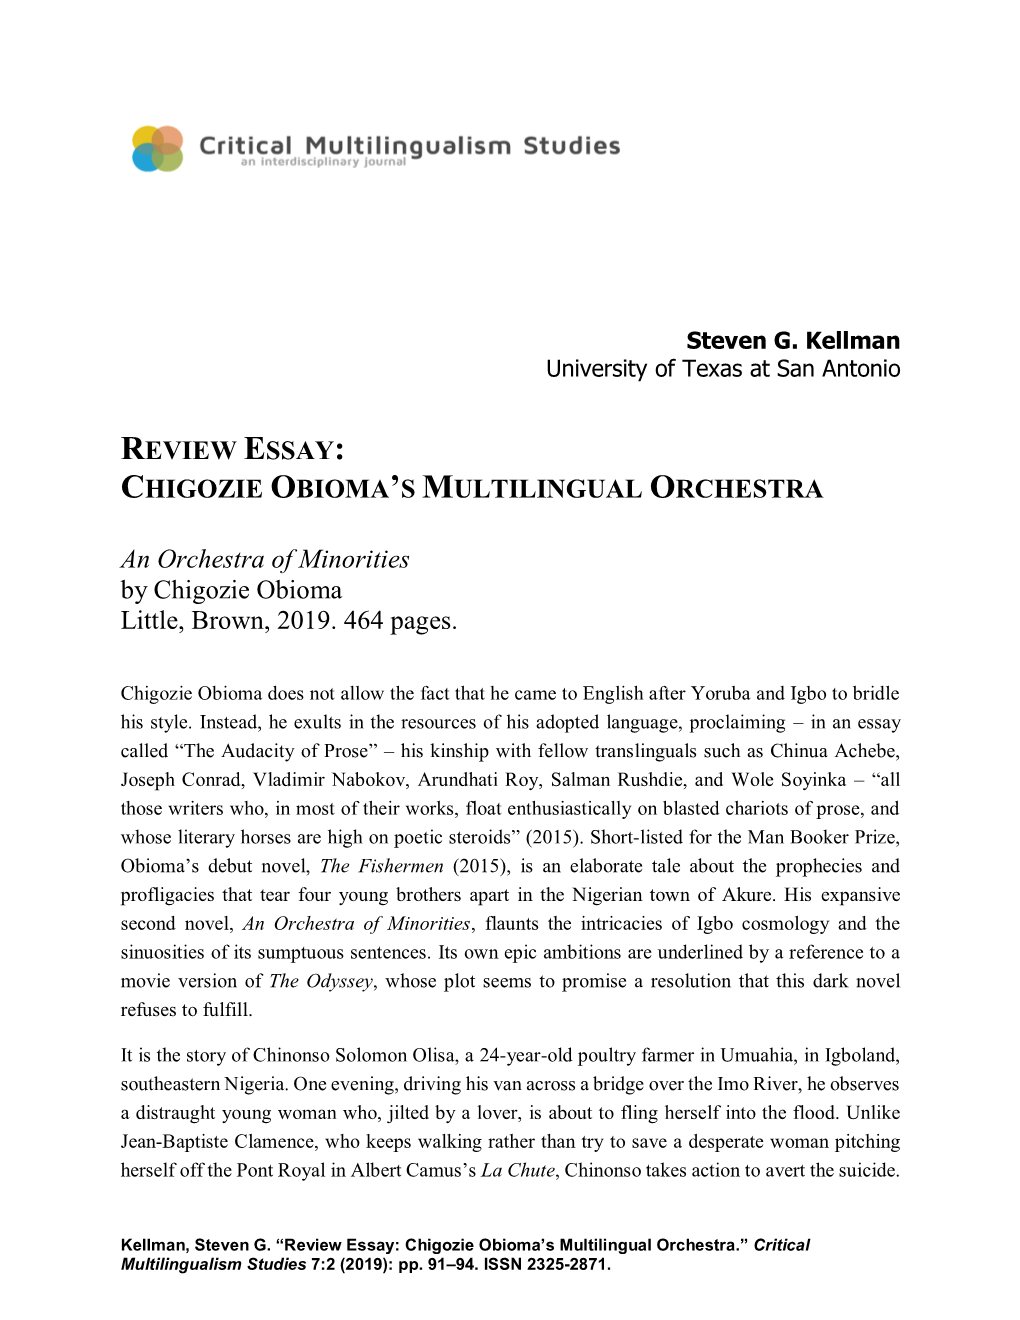 Review Essay: Chigozie Obioma’S Multilingual Orchestra